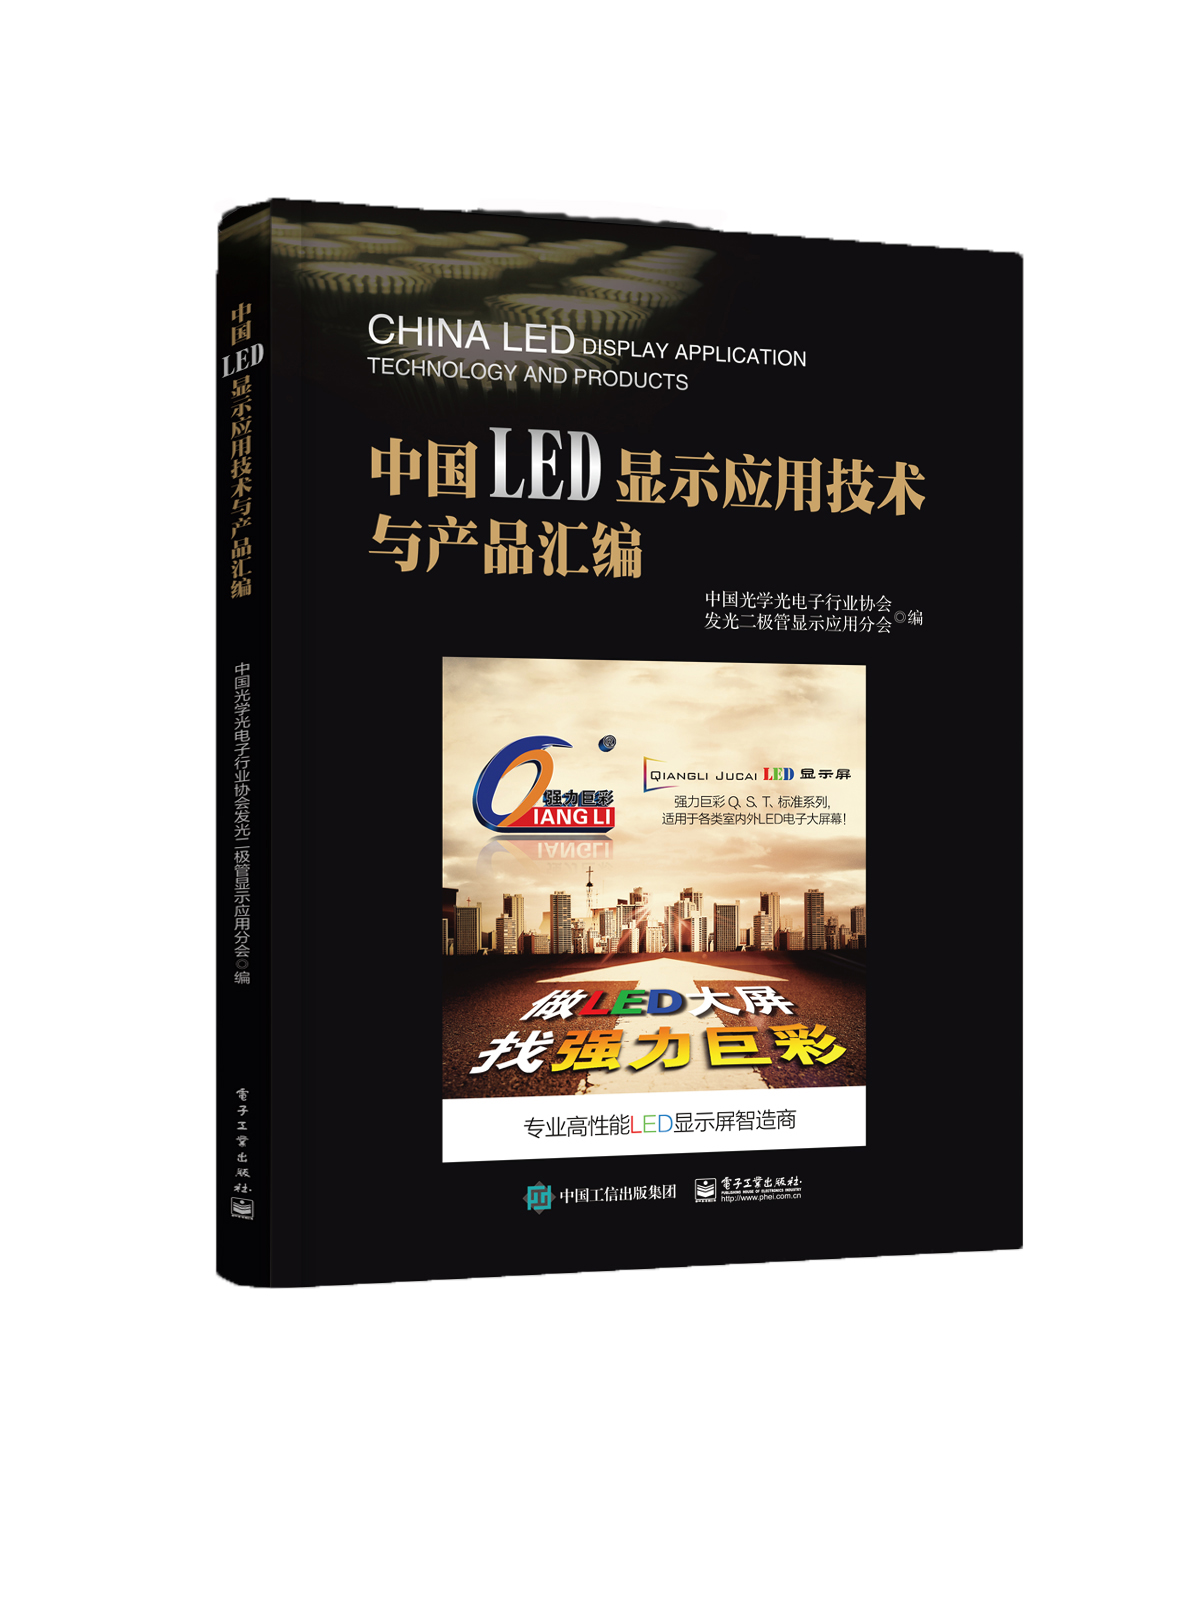 中国LED显示应用技术与产品汇编9787121310546 azw3格式下载